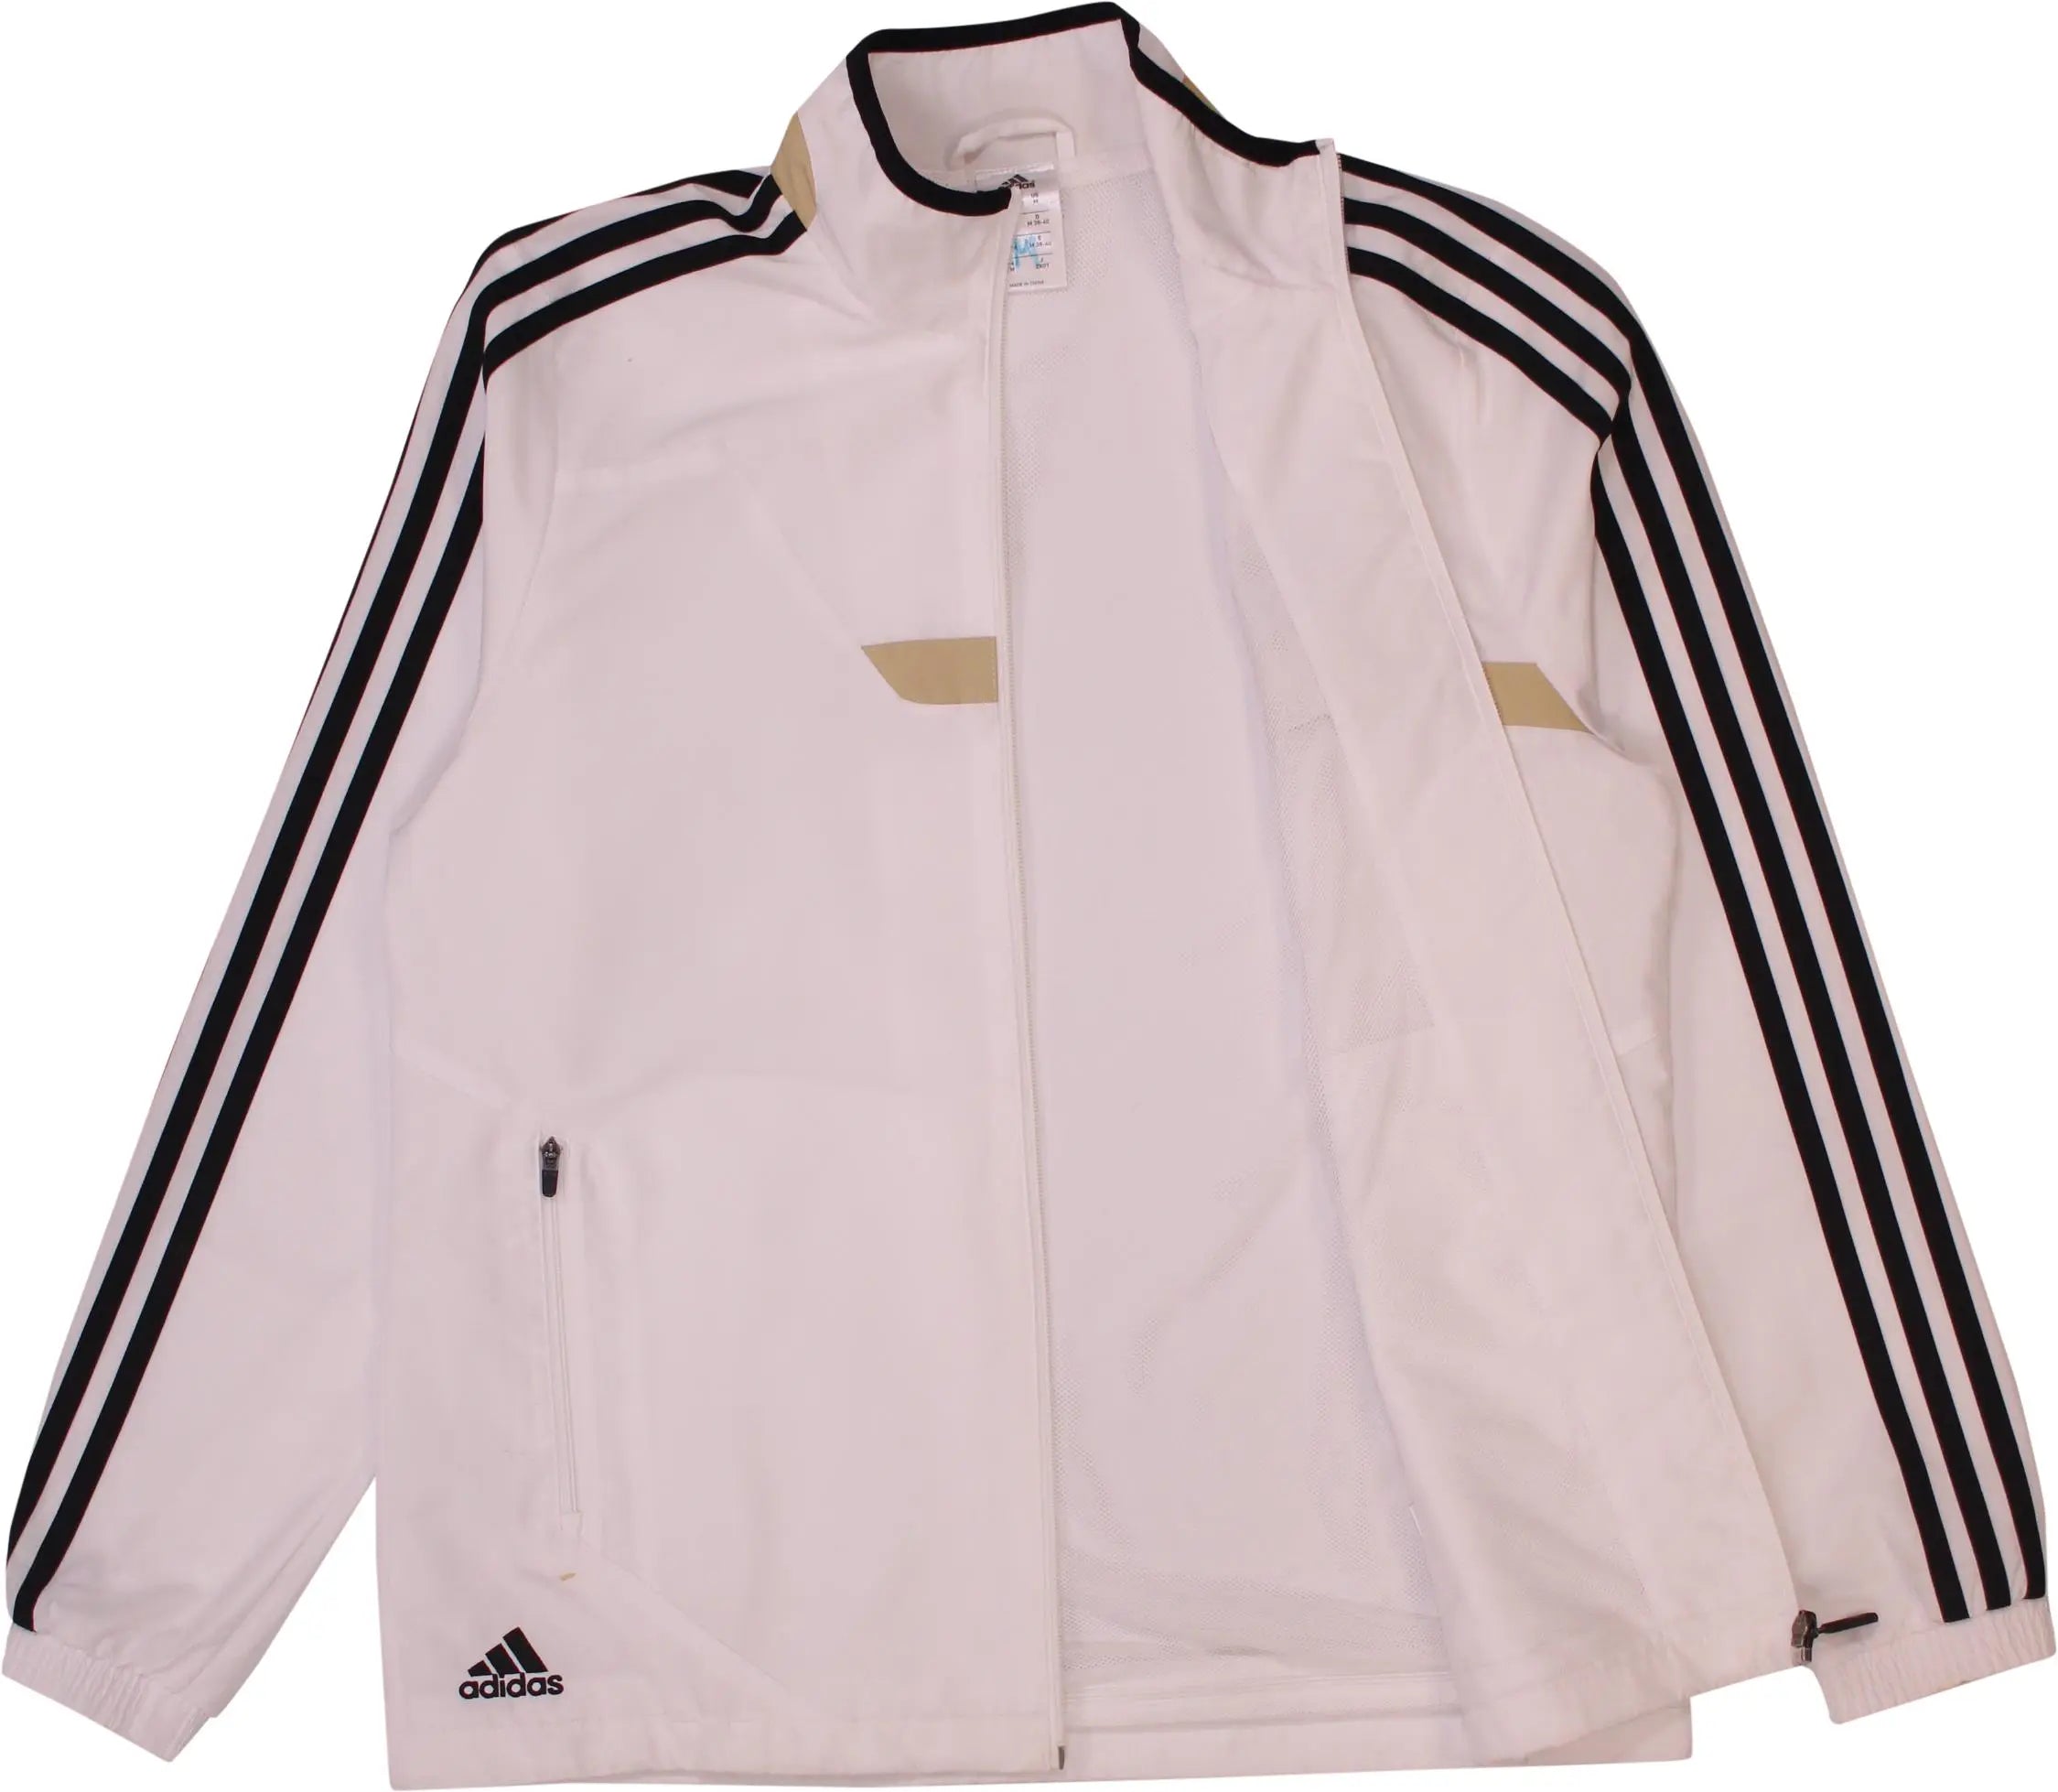 Adidas - Deutscher Fussball-Bund Track Jacket- ThriftTale.com - Vintage and second handclothing